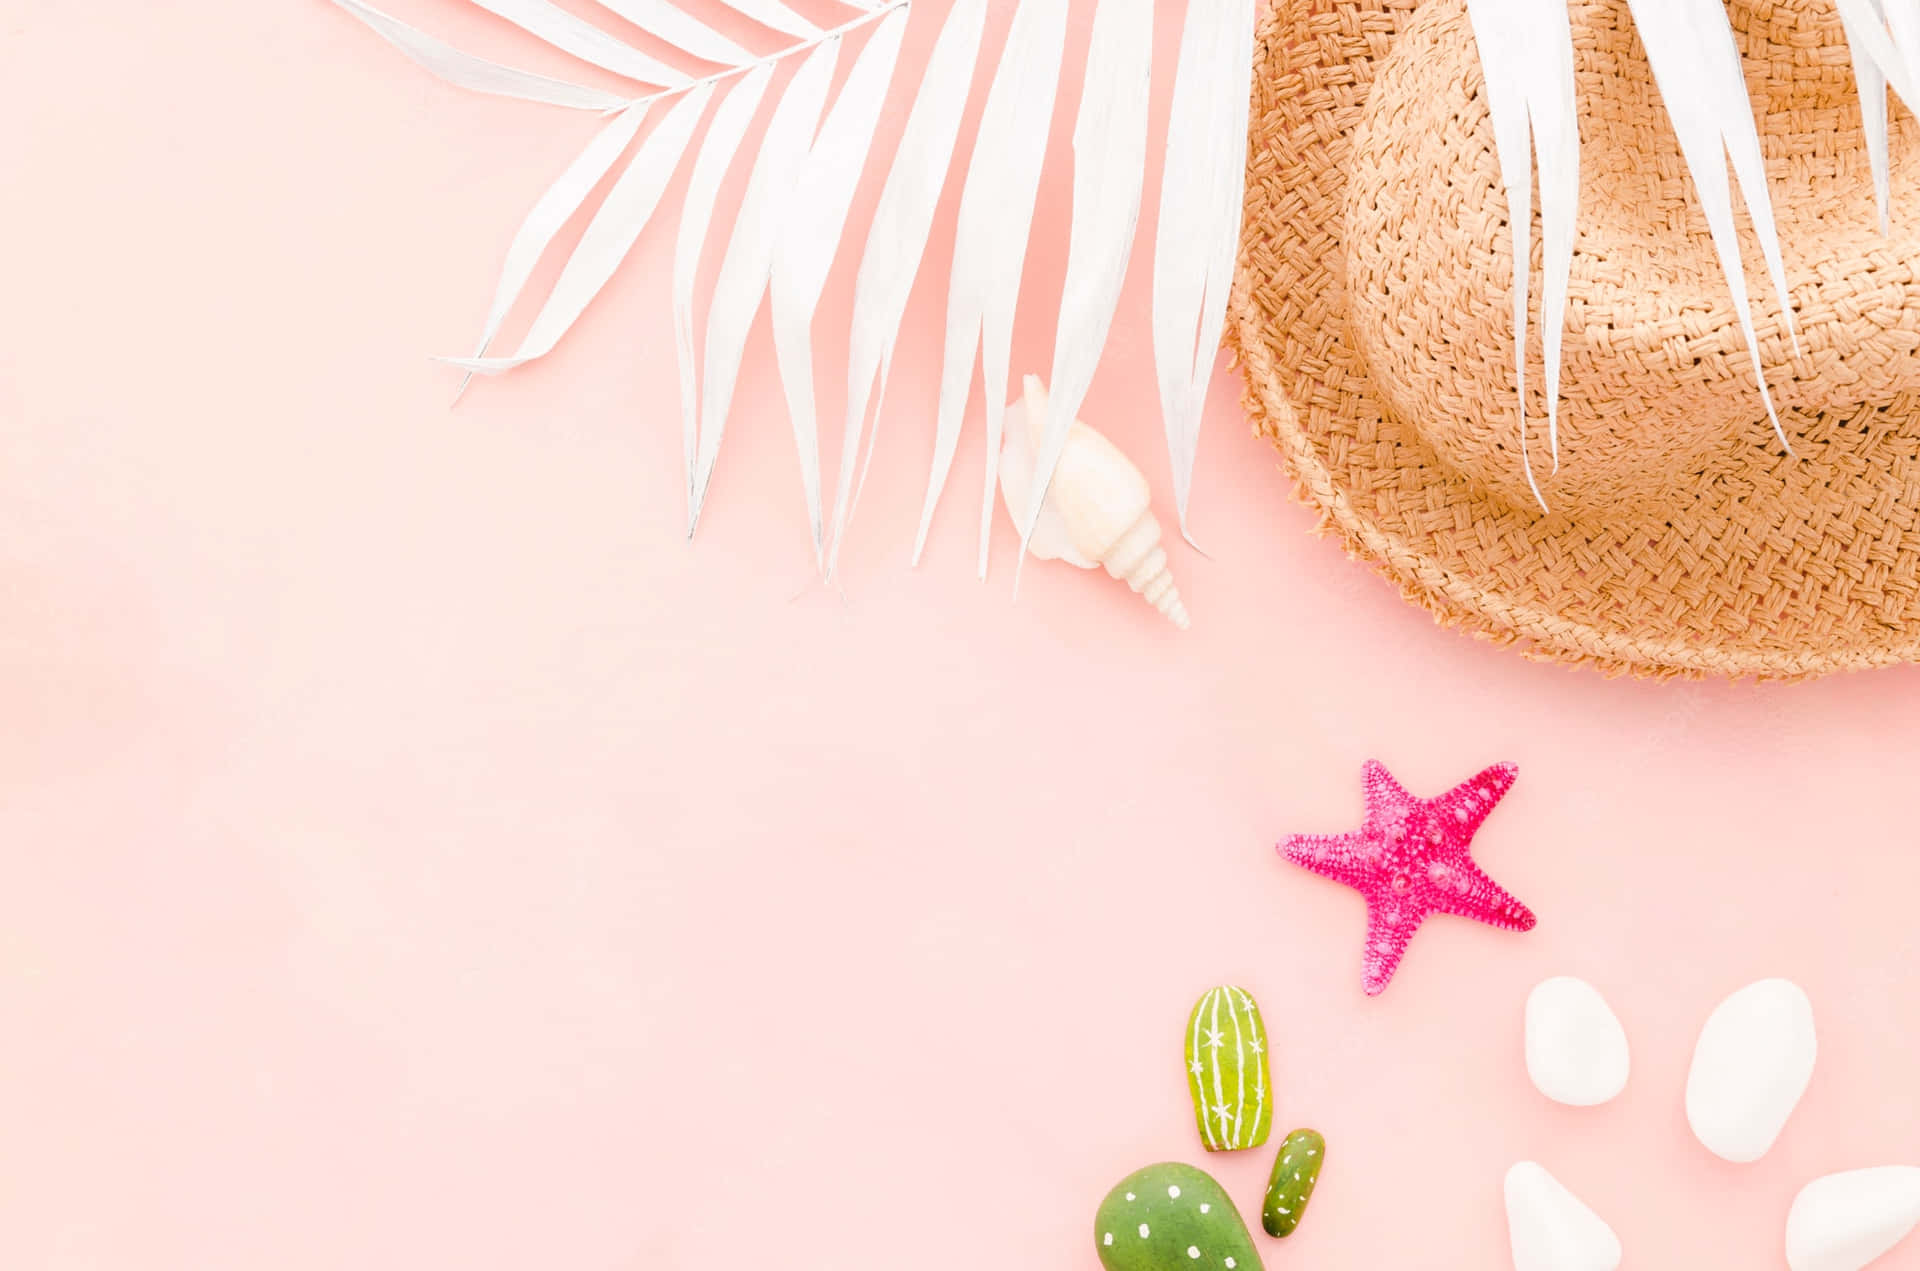 Nyd den livlige energi fra denne Pink Summer Desktop Wallpaper. Wallpaper